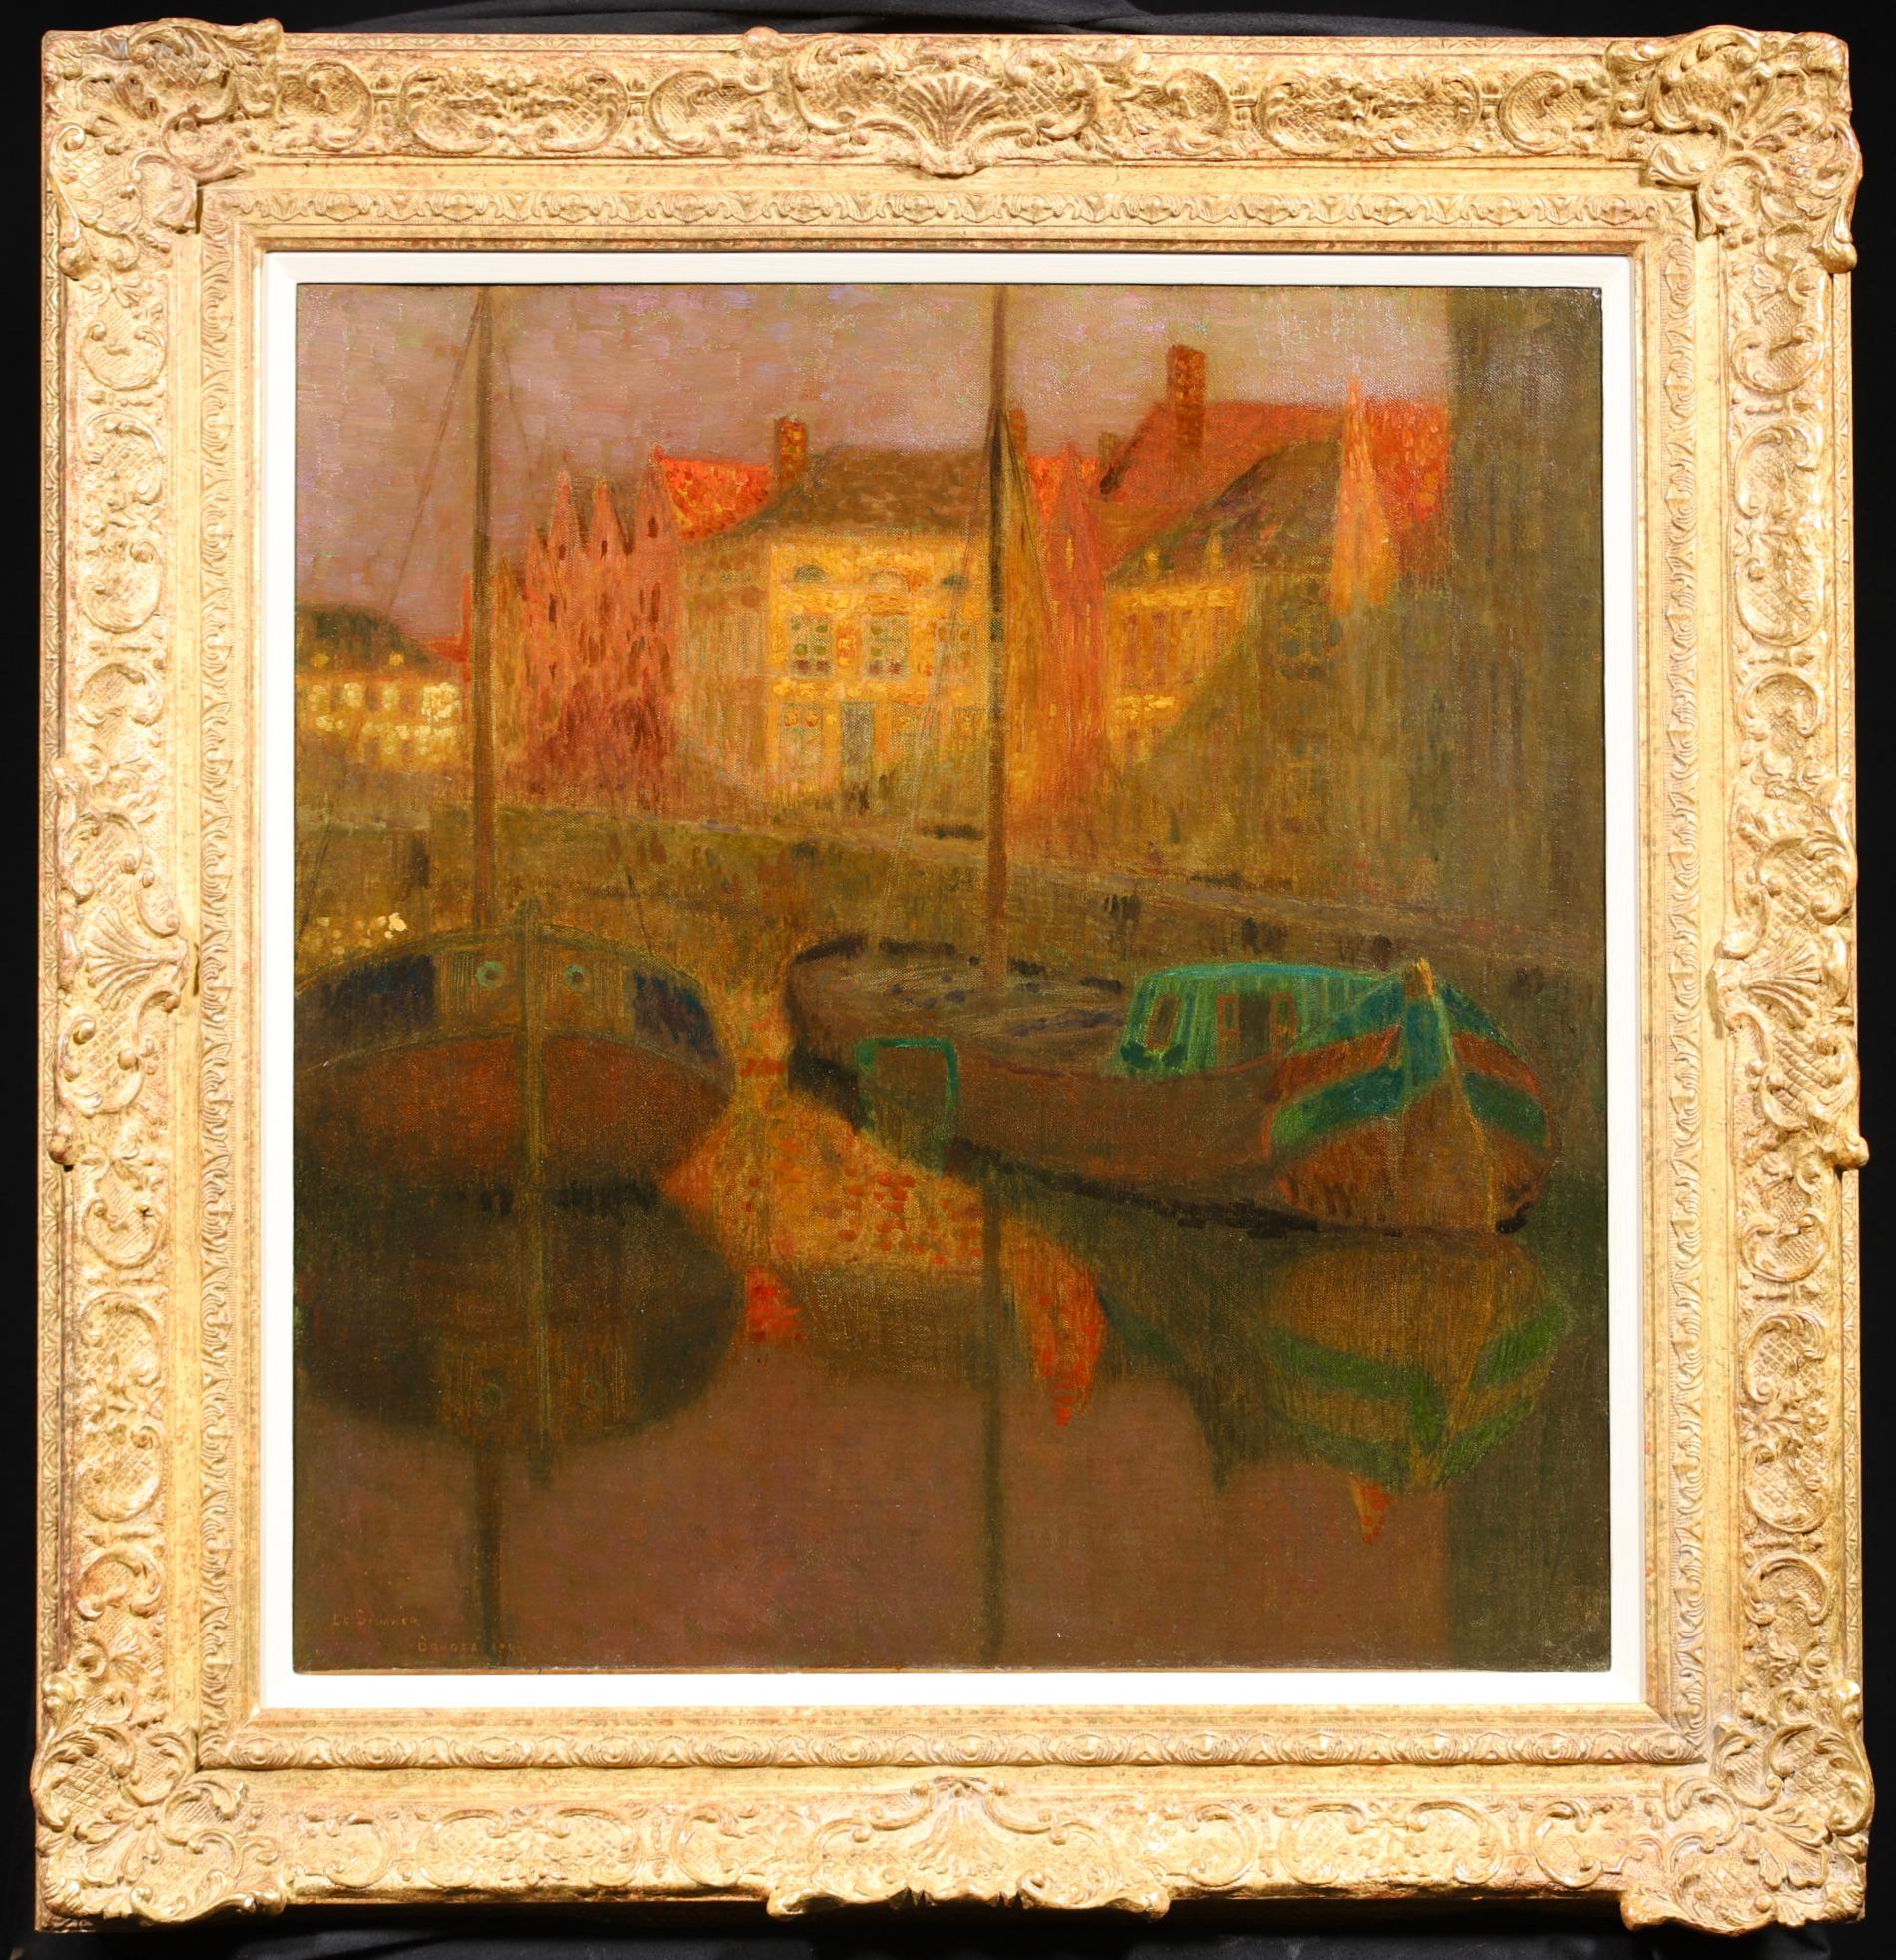 Huile sur toile post impressionniste signée du peintre français Henri Le Sidaner. Cette pièce étonnante  représente deux bateaux de pêche amarrés dans un village de pêcheurs au coucher du soleil. Les dernières lueurs du jour illuminent les bâtiments